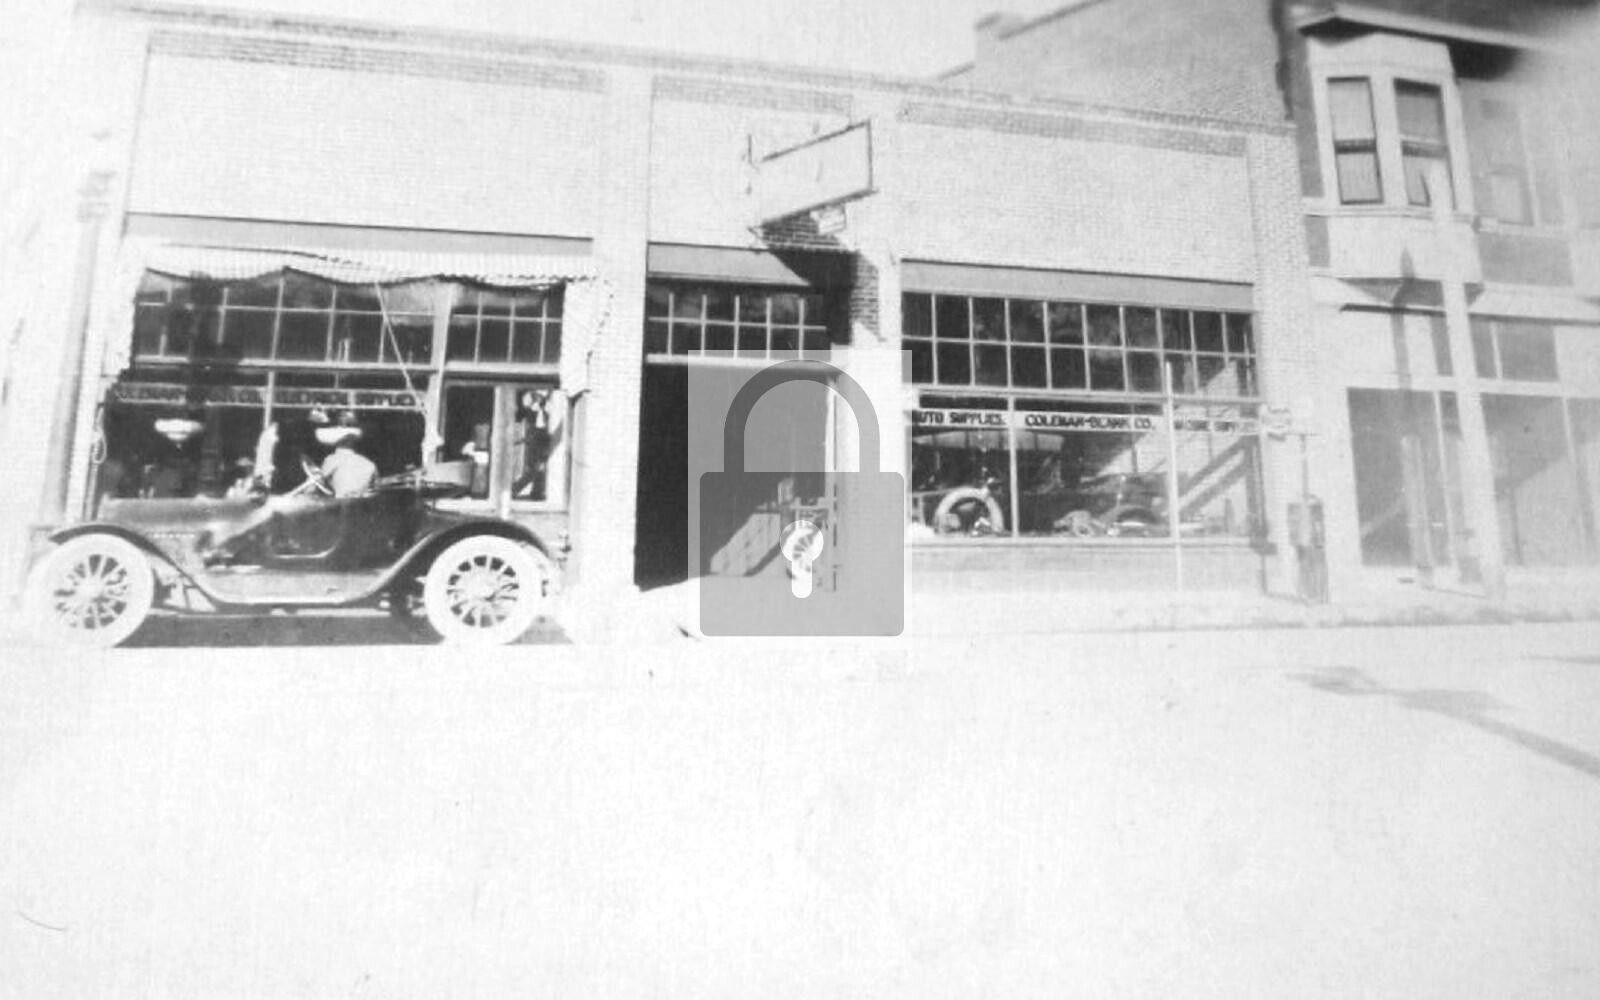 Coleman-Blank Auto Supply Co Albuquerque New Mexico NM Reprint Postcard